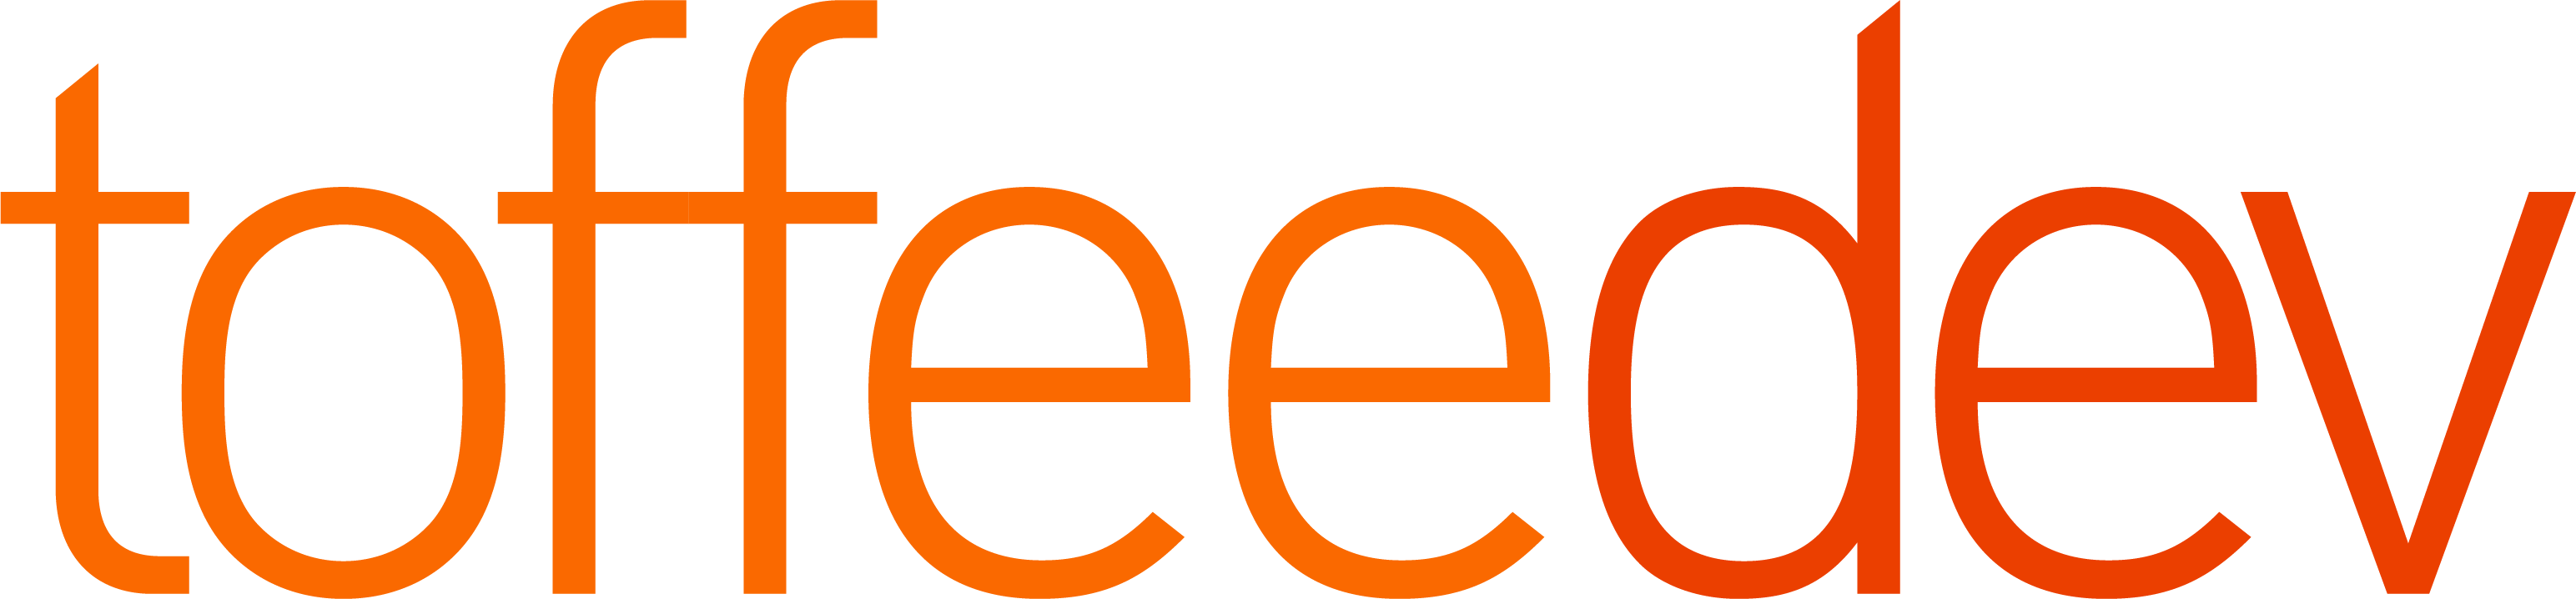 Logo ToffeeDev-3